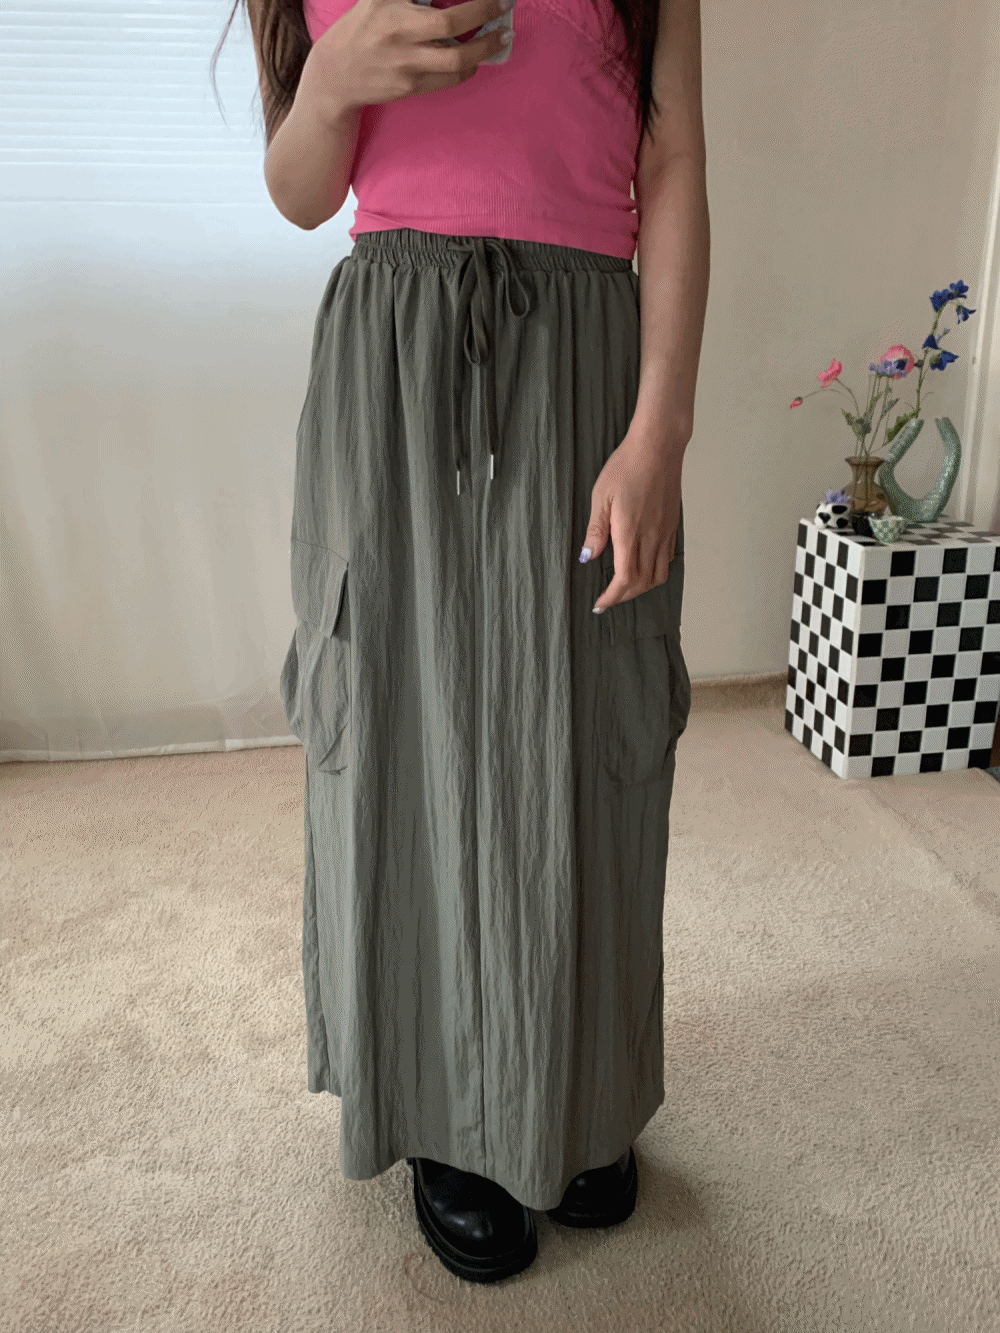 [Skirt] Aisley cargo pocket skirt / 2 colors